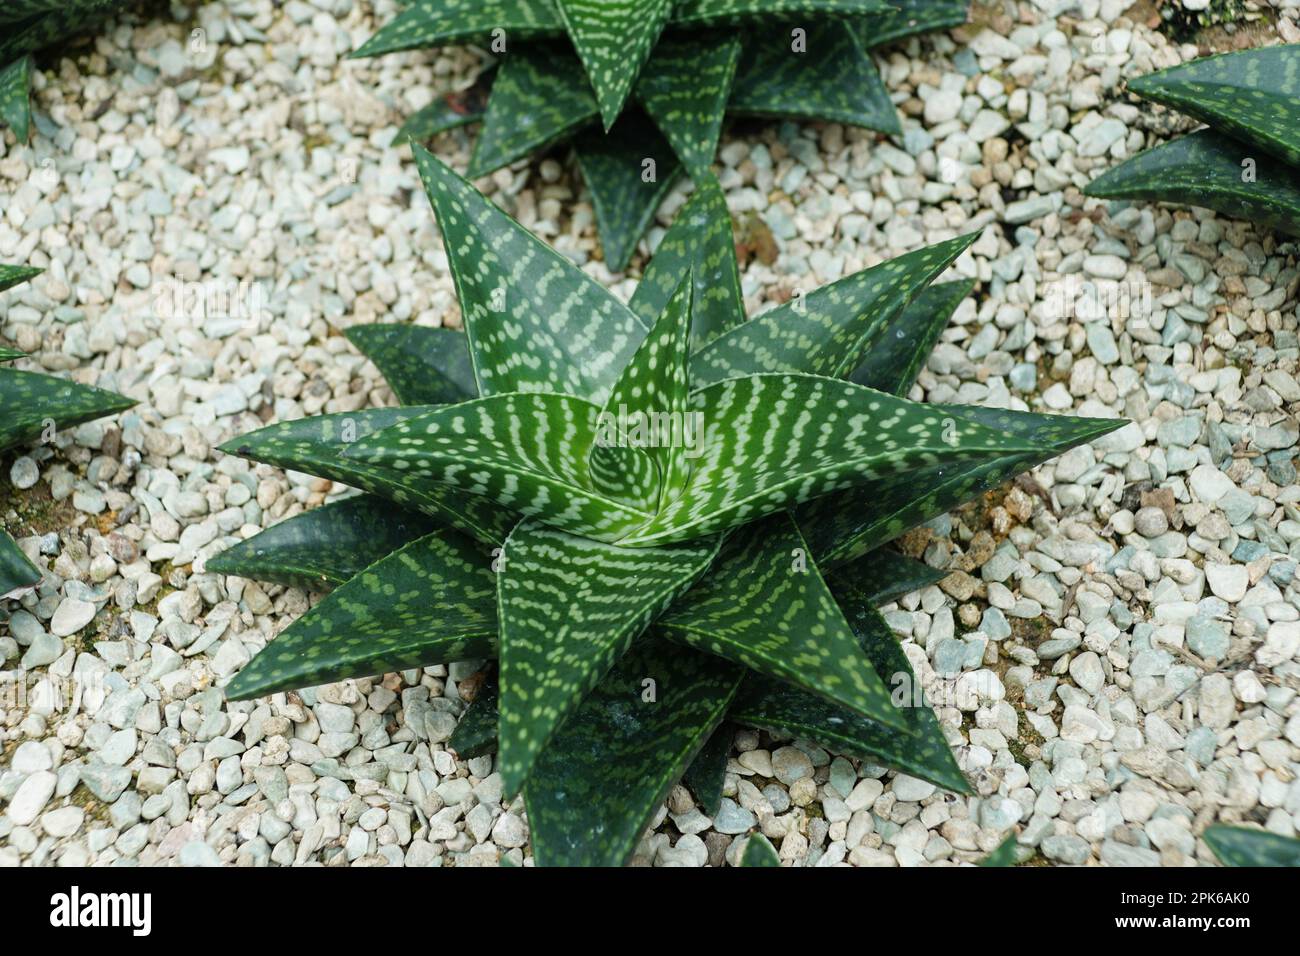 Couleur verte de Haworthia limifolia, une dainty succulente, produisant des rosettes en spirale de feuilles charnues vert profond avec des pointes pointues et aiguisées Banque D'Images